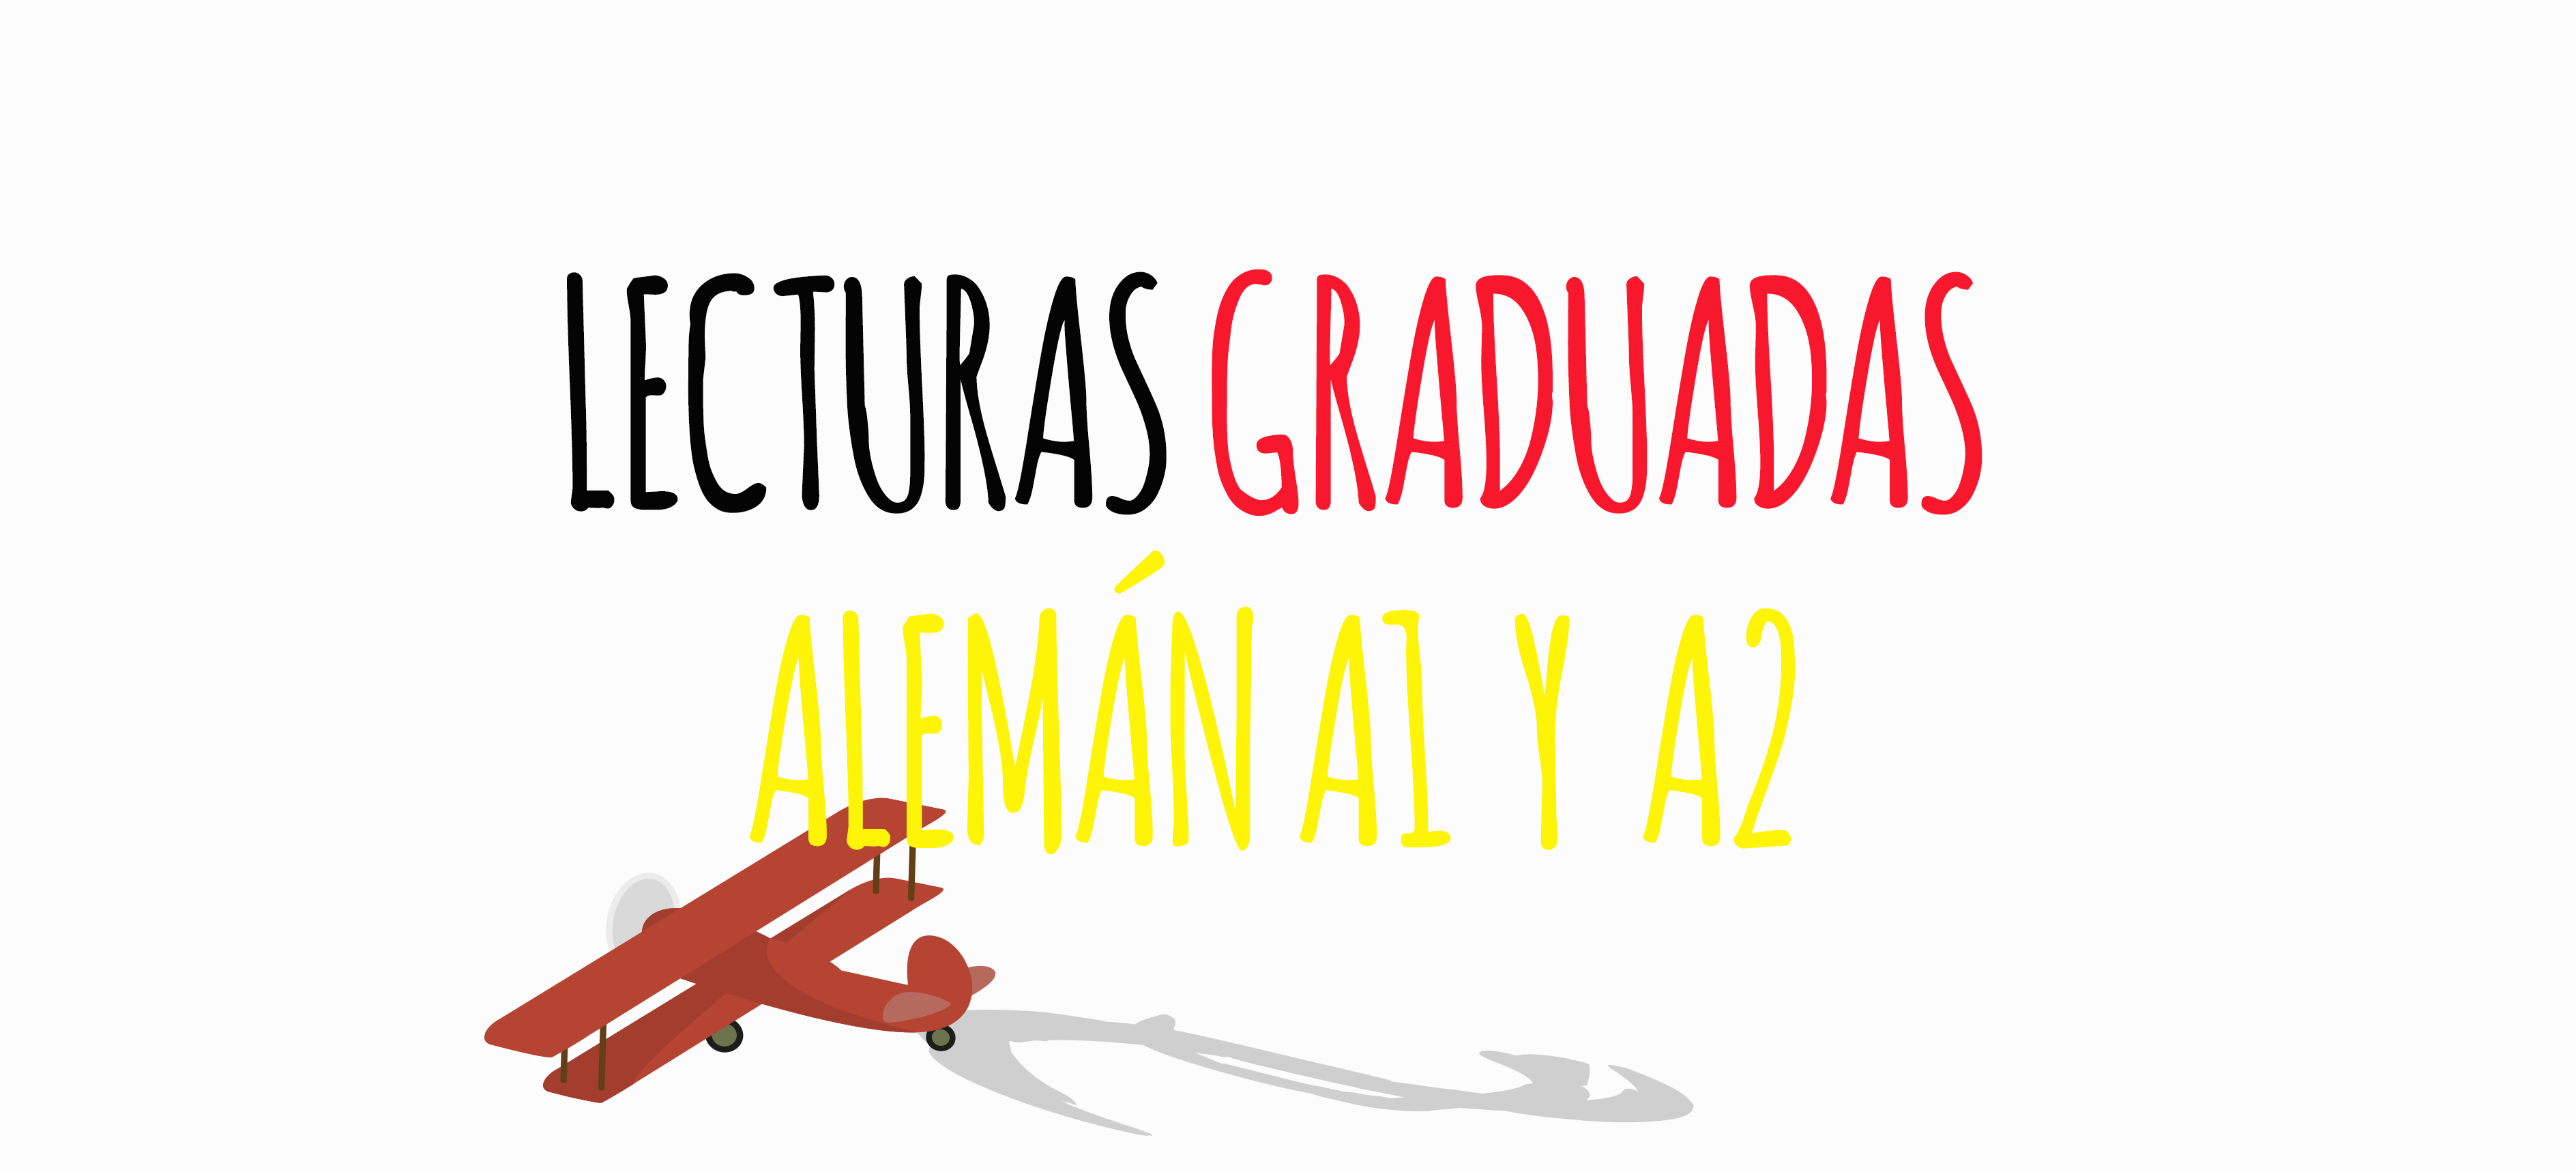 📗 Lecturas graduadas Alemán (A1 A2) -